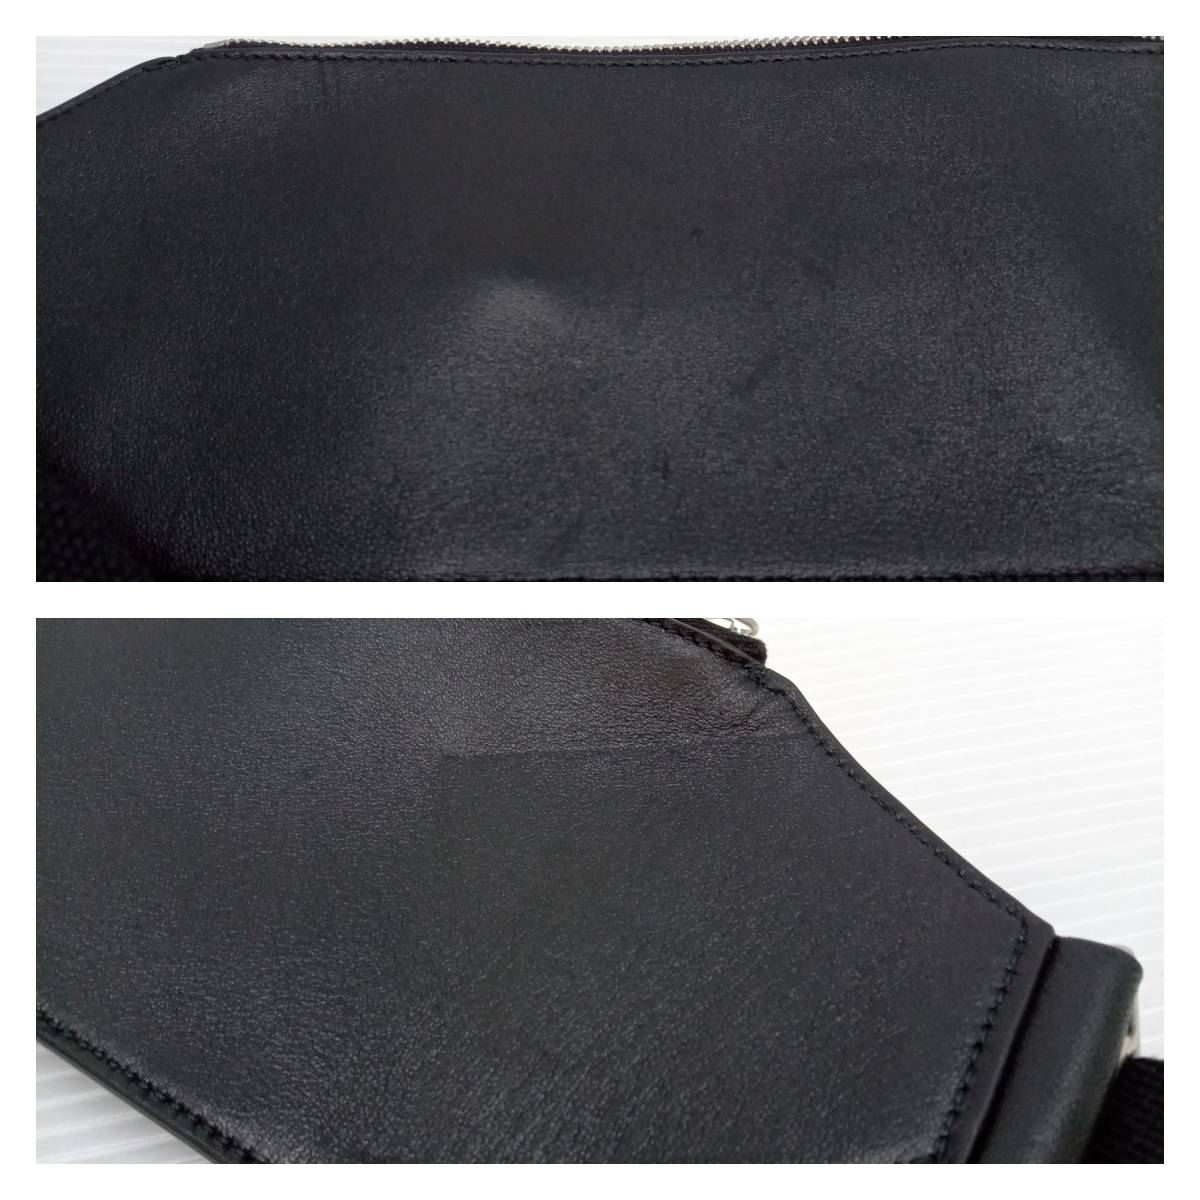 * JIL SANDER Jil Sander FM21 кожа тонкий корпус сумка упаковочный пакет имеется черный через год 